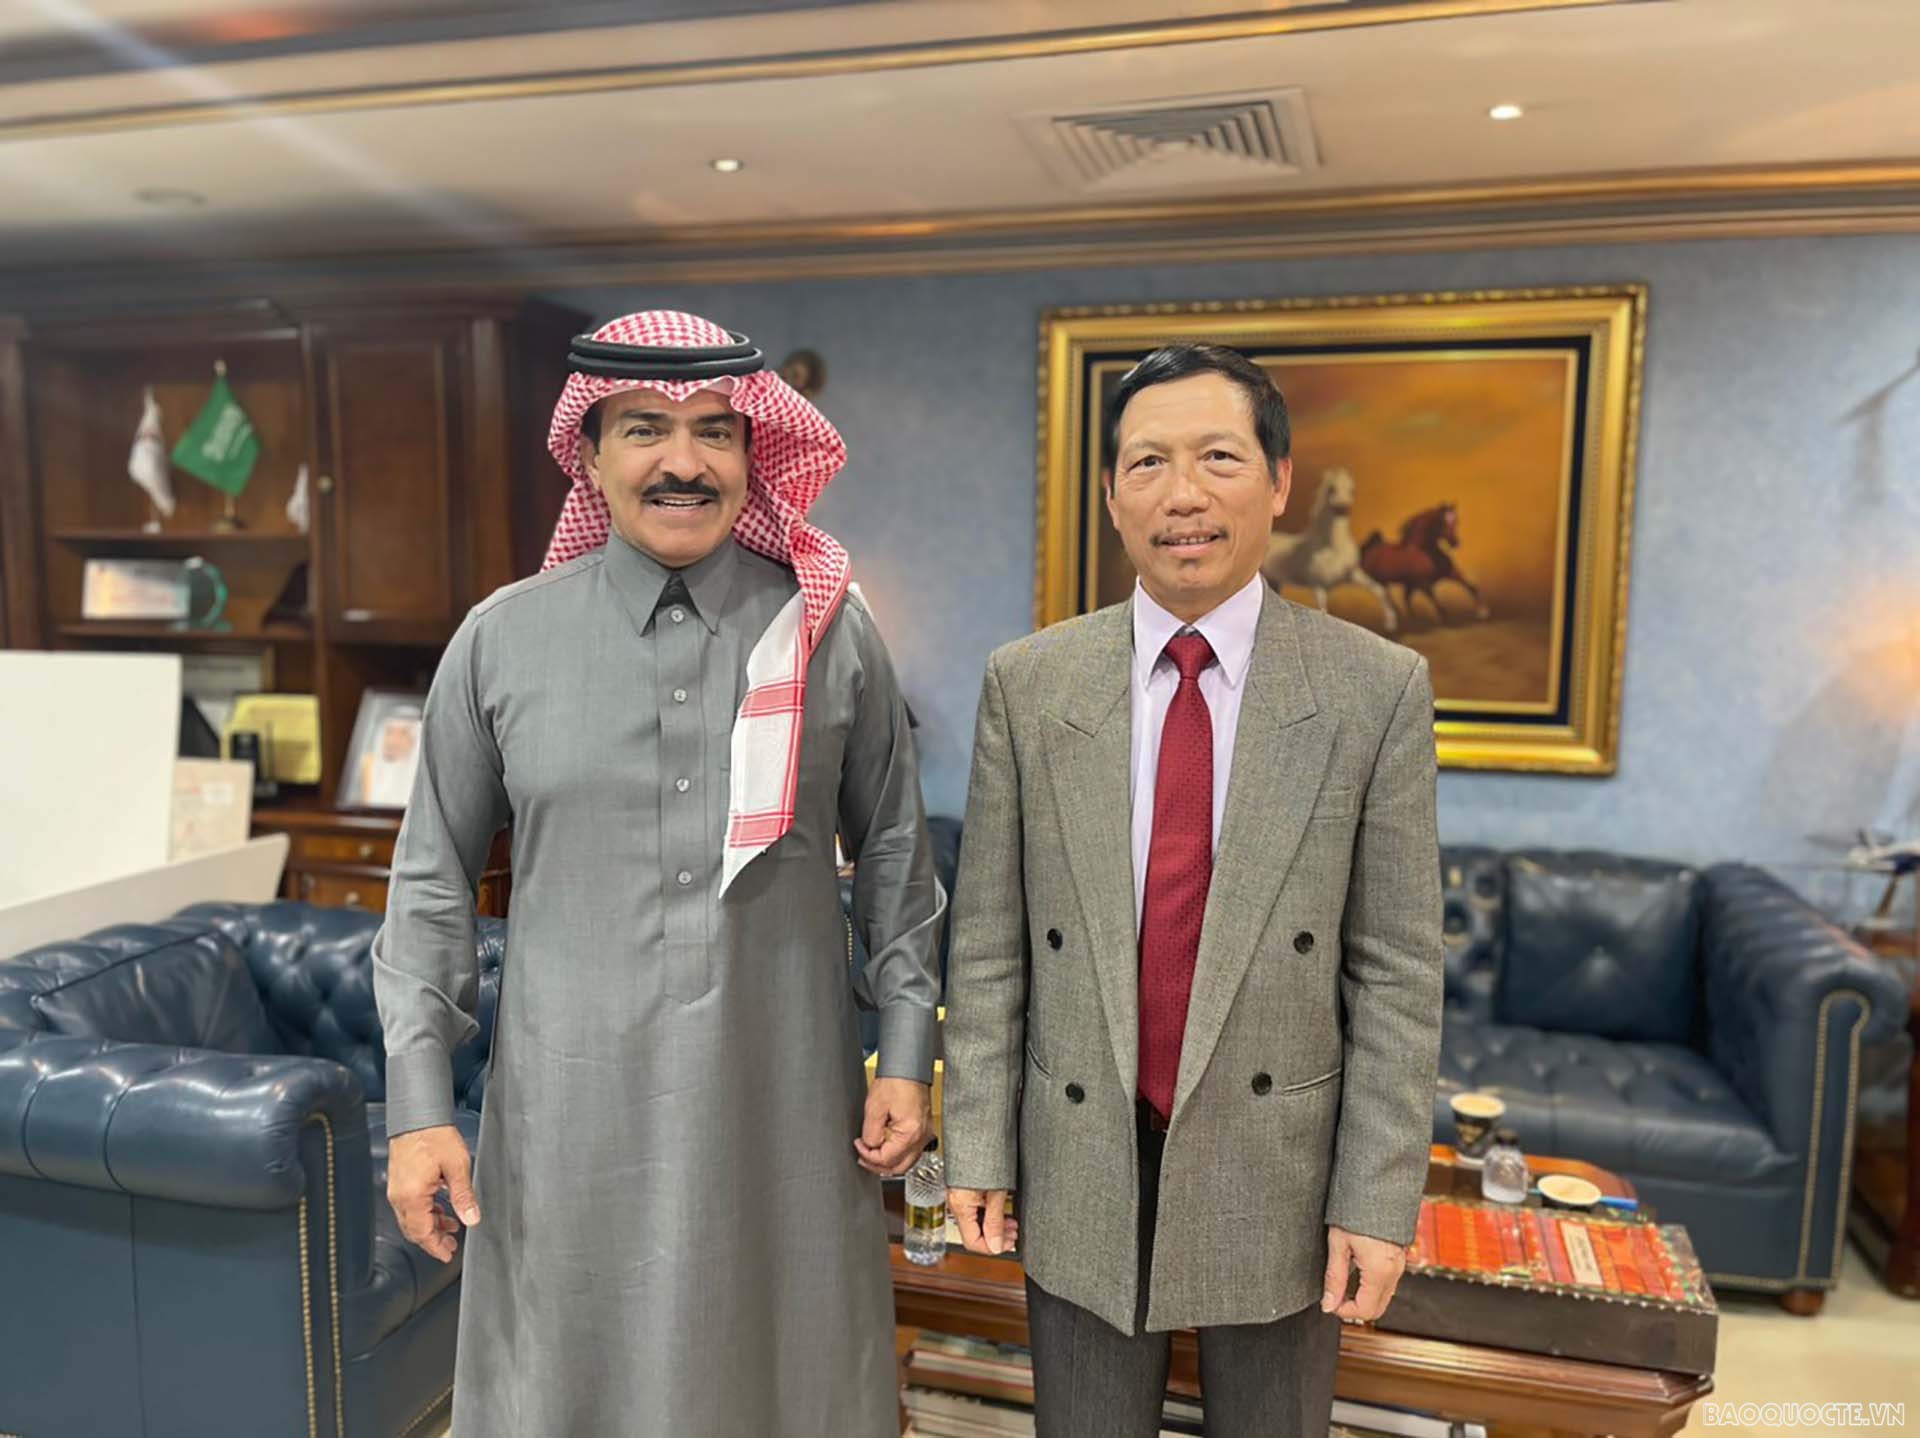 Đại sứ Vũ Viết Dũng và ông Ajlan bin Abdulaziz Al Ajlan, Chủ tịch Federation of Saudi Chambers kiêm Chủ tịch Riyadh Chamber.